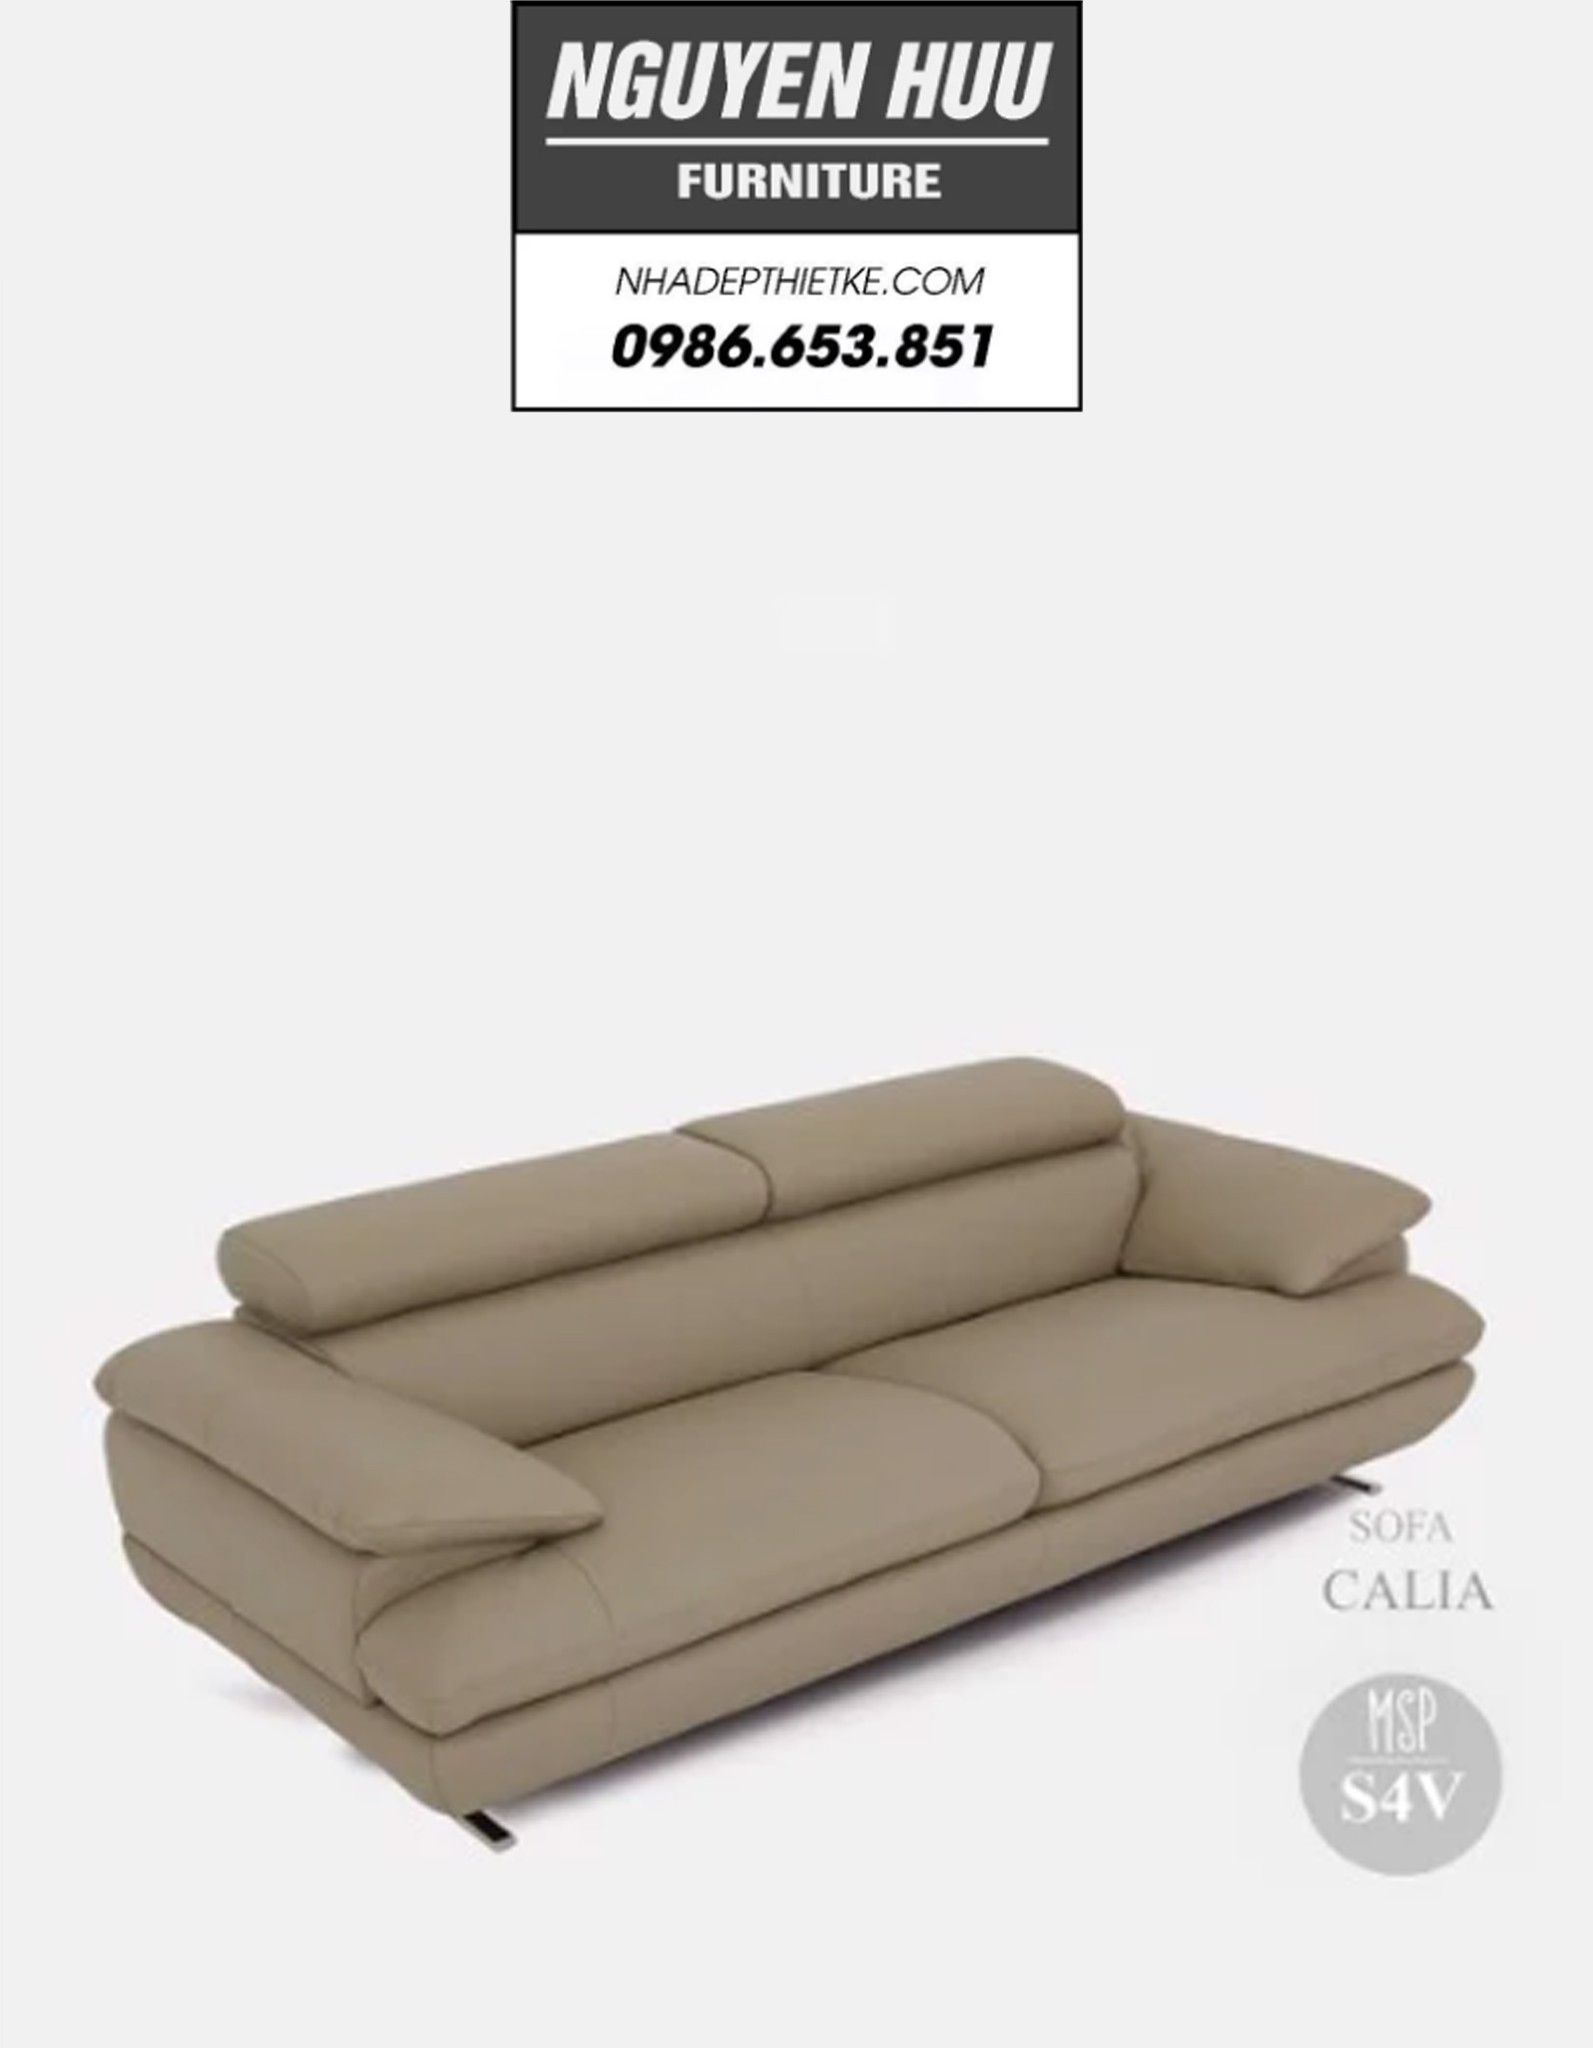 Sofa văng Calia S4V